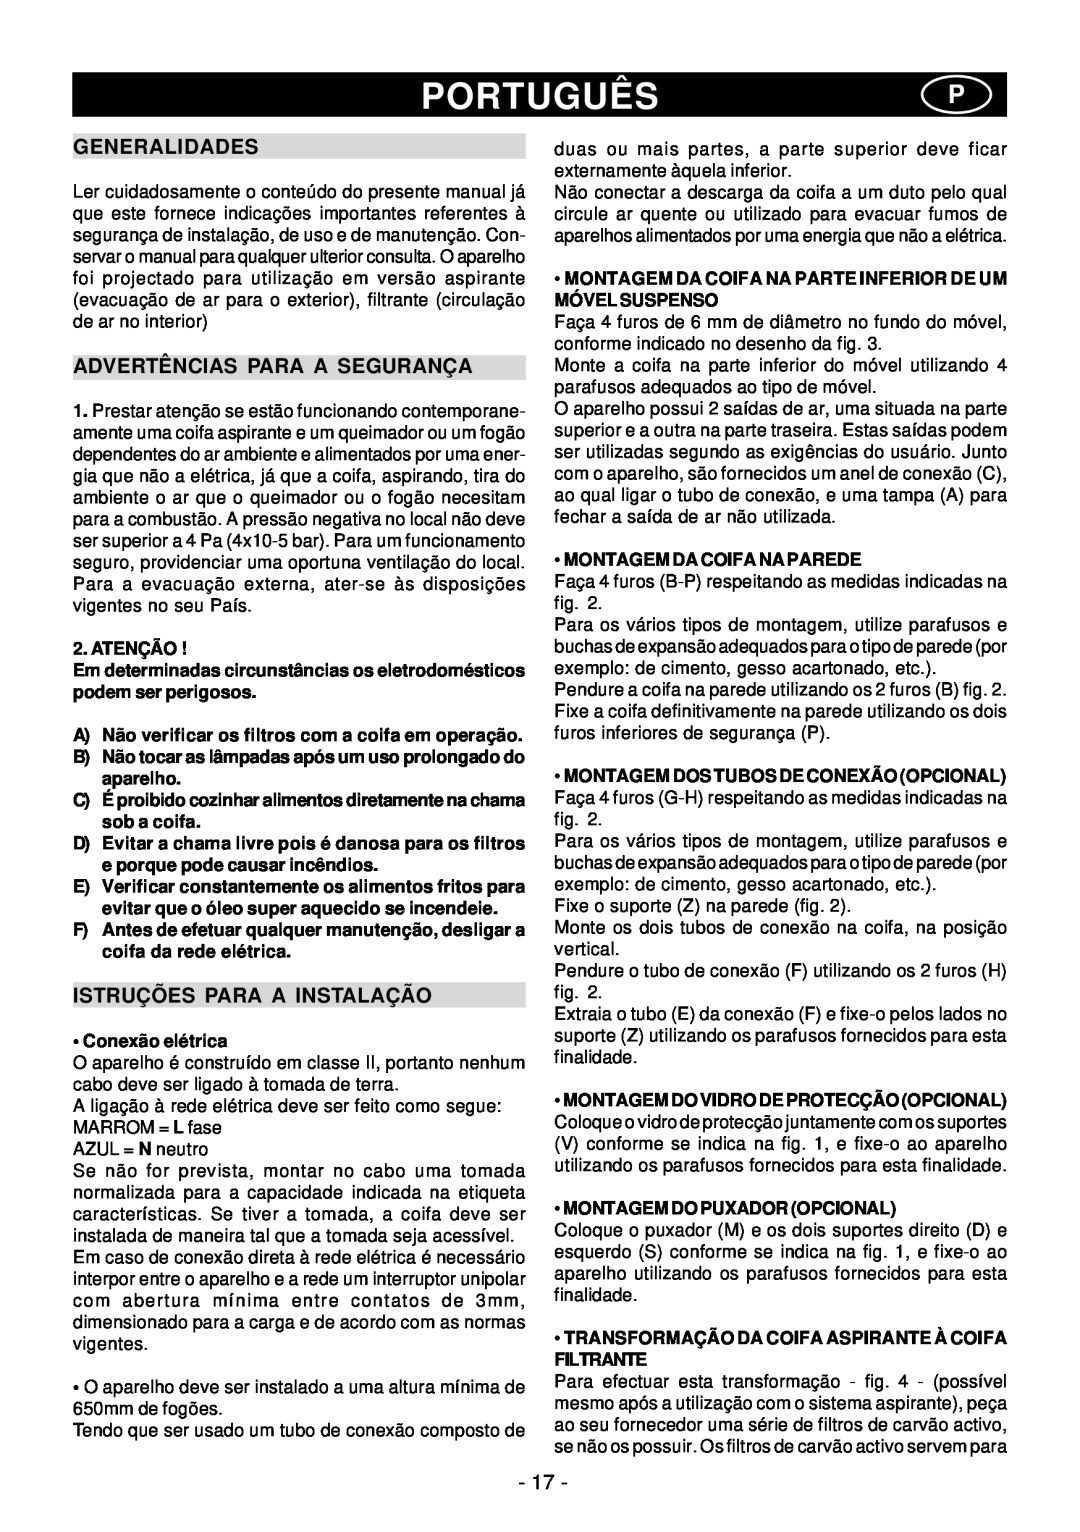 Elitair PN-36 manual Portuguêsp, Advertências Para A Segurança, Istruções Para A Instalação, Generalidades 